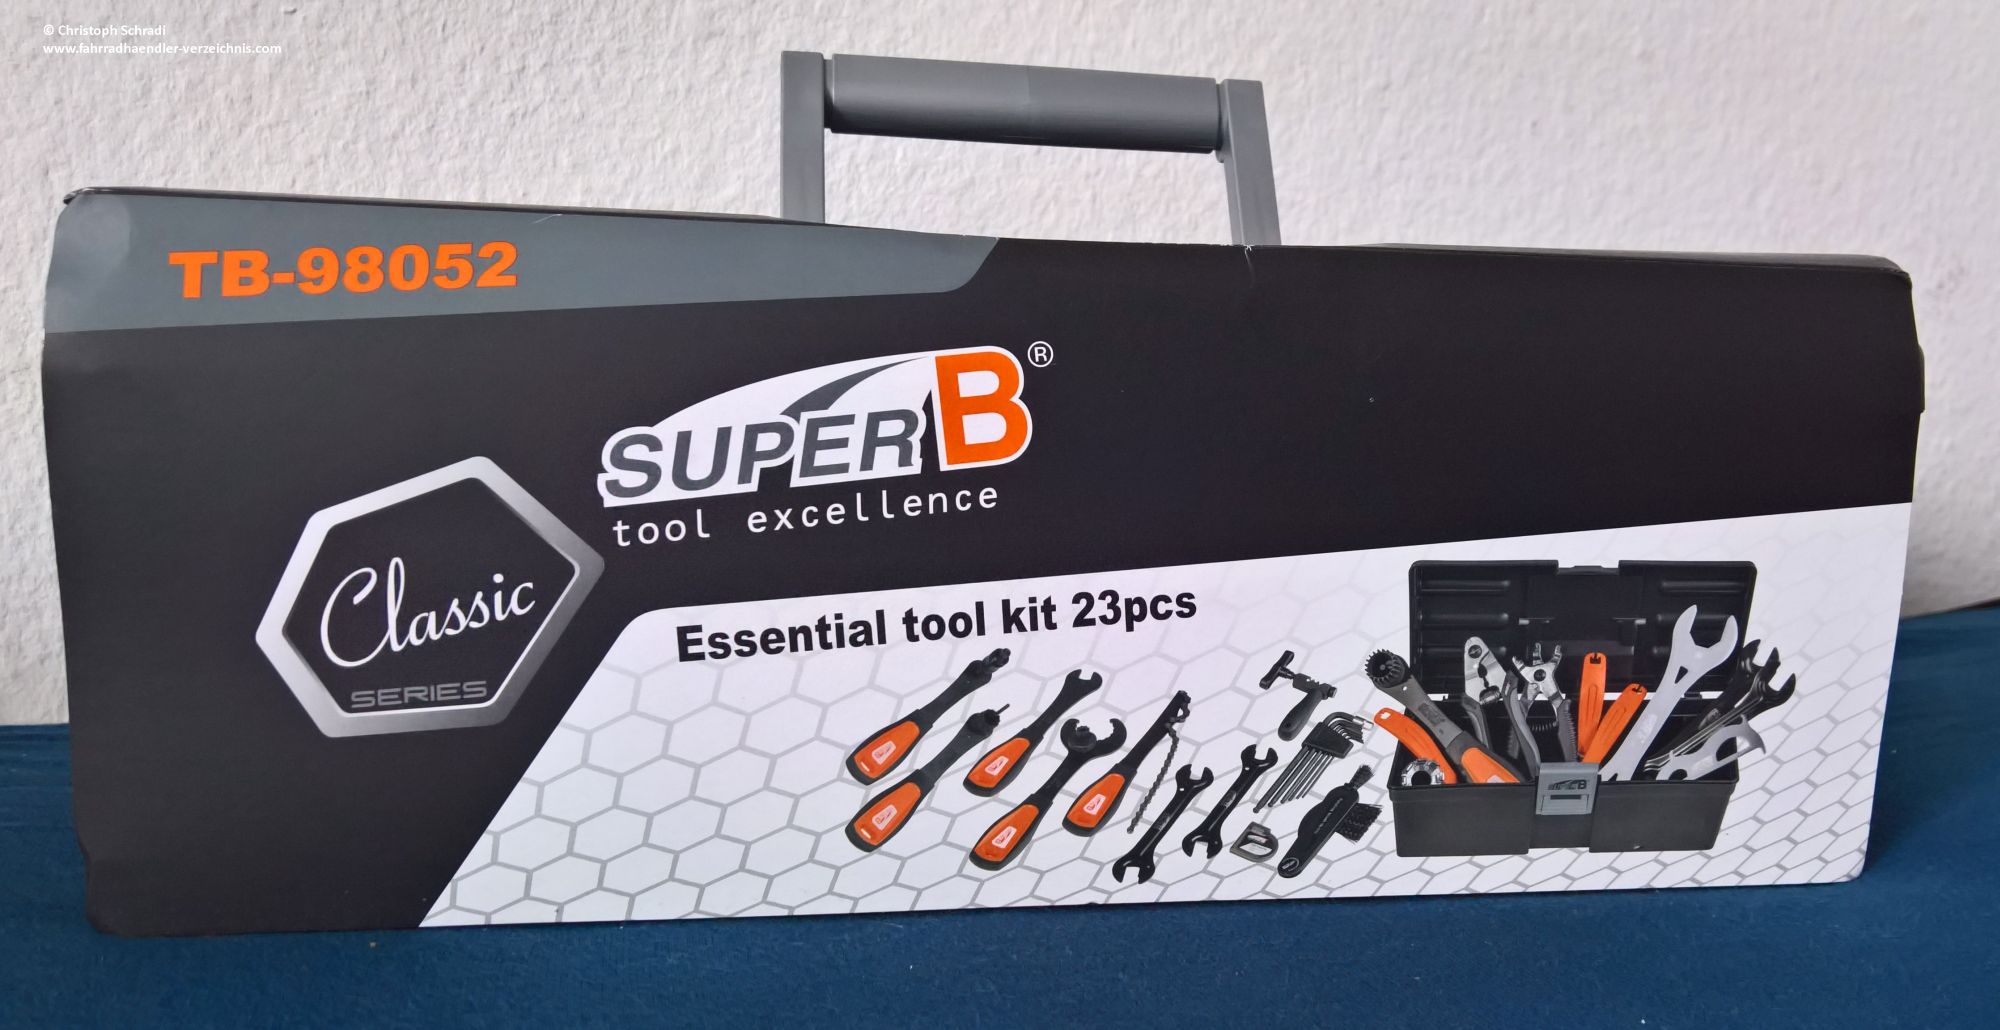  SuperB TB 98052  Fahrrad-Werkzeugkoffer im Test (Teil 1)